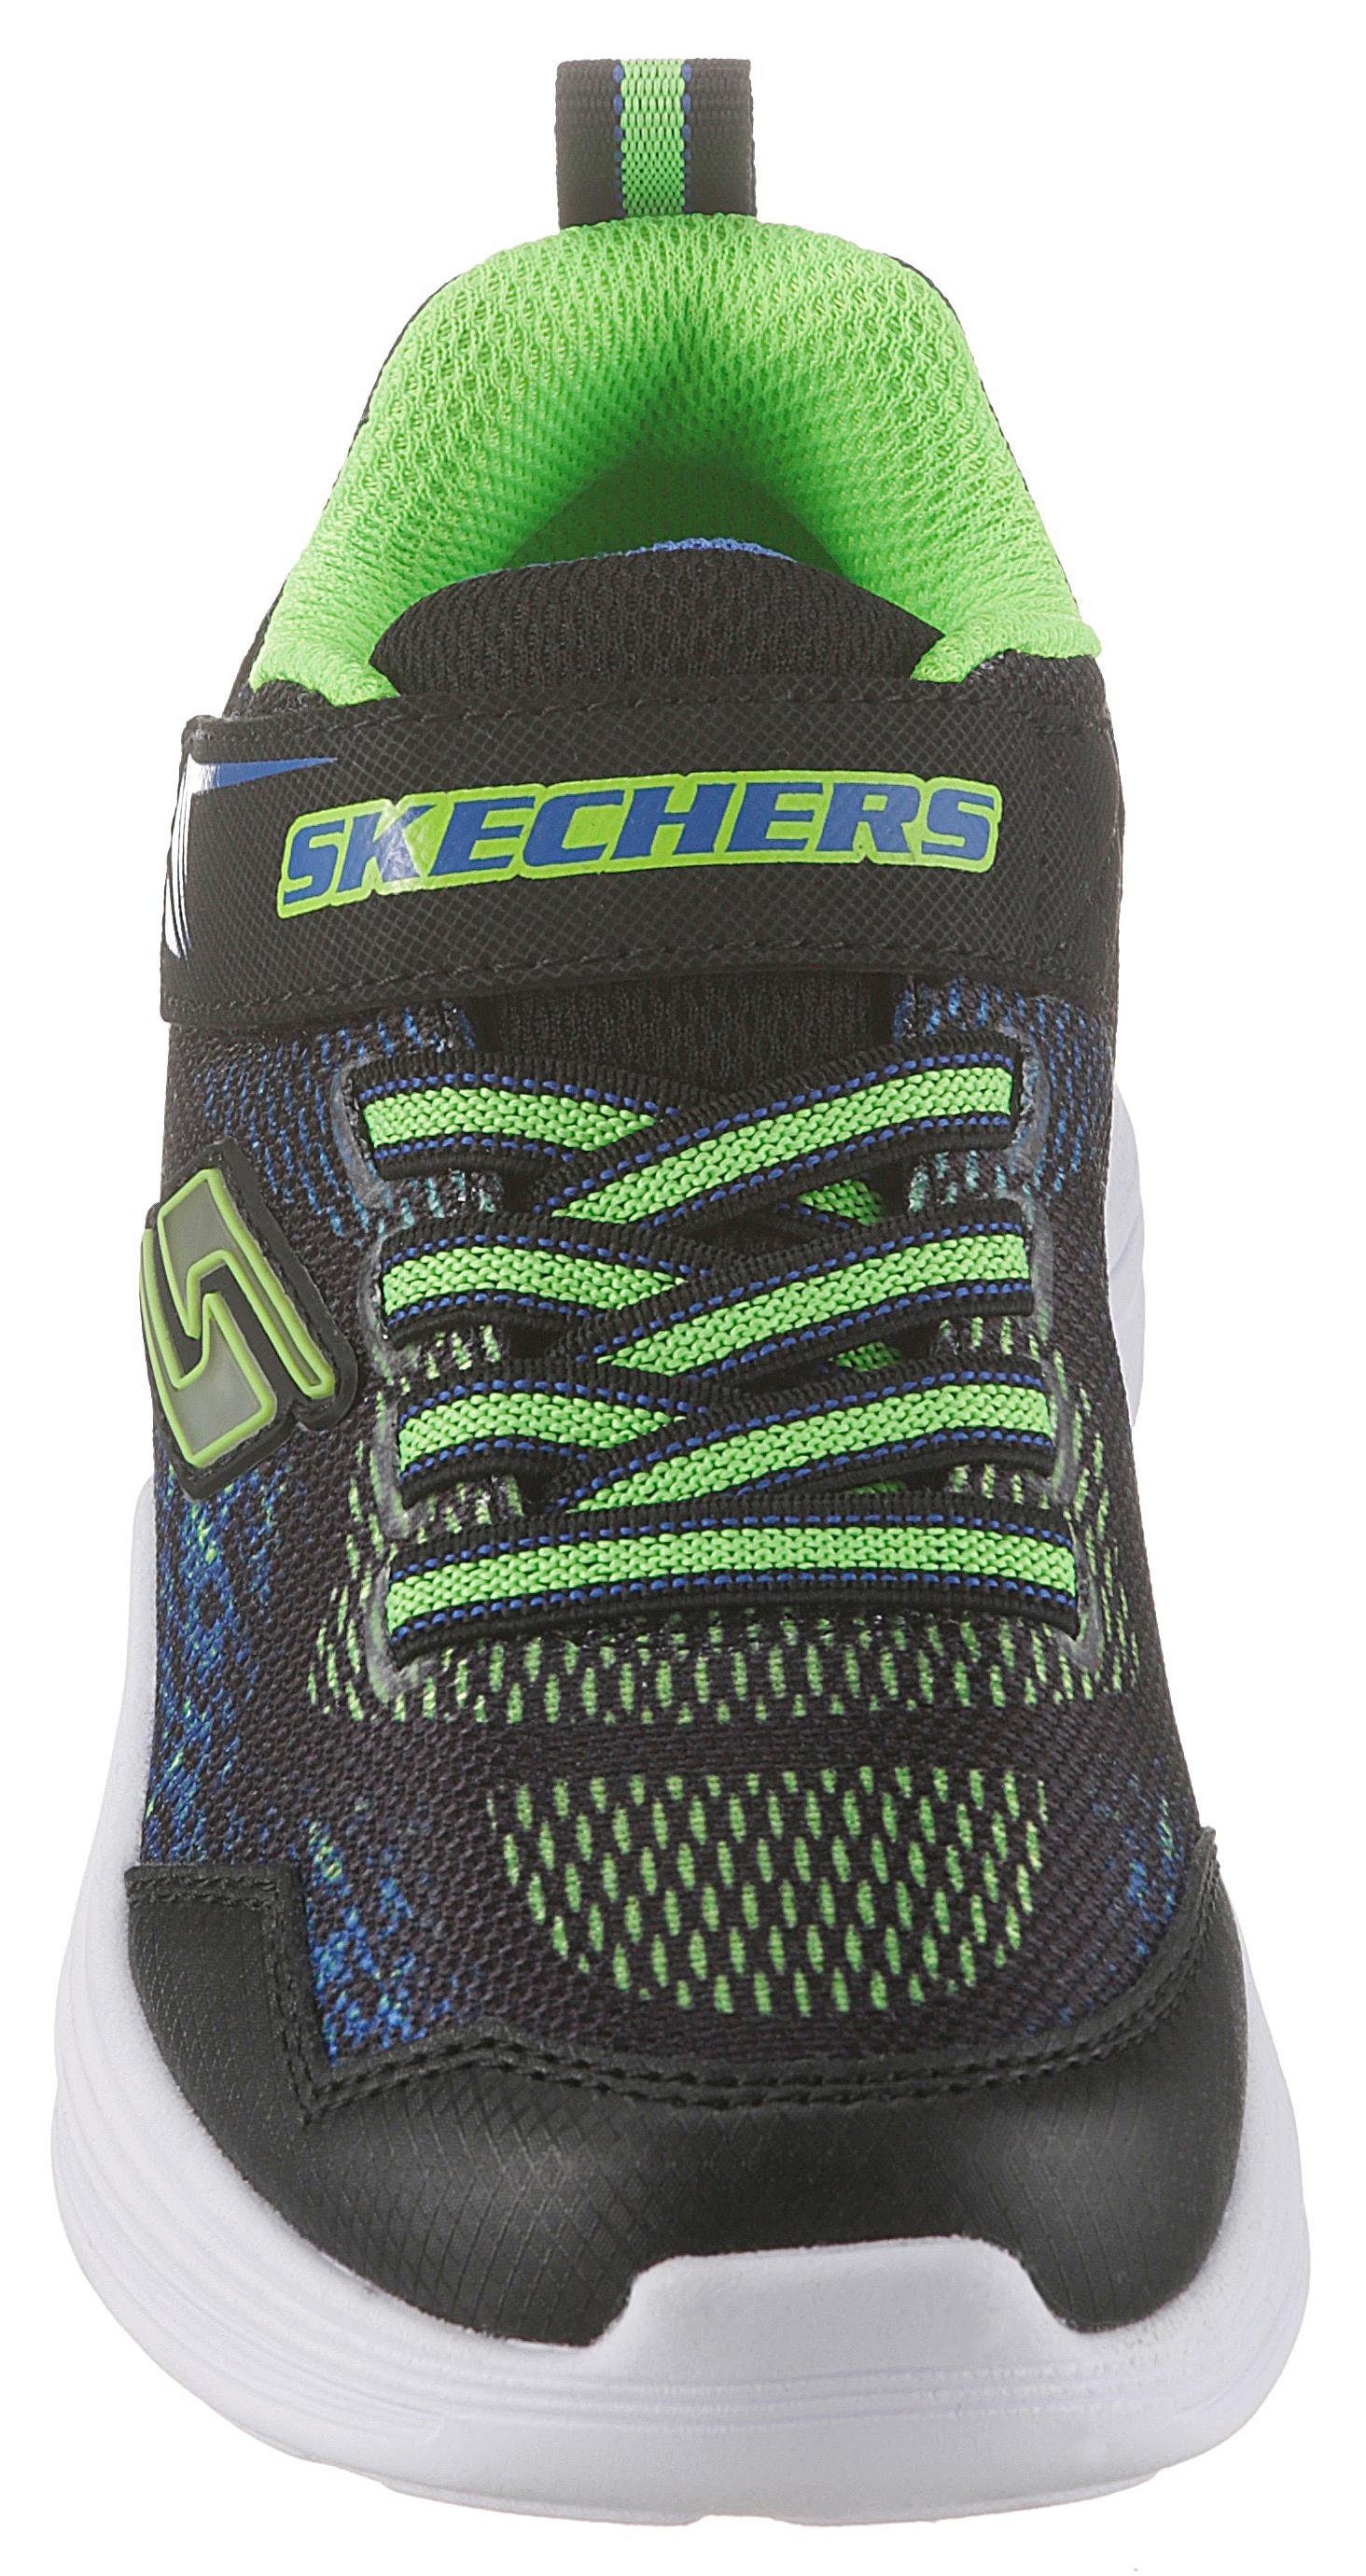 und Kids Sneaker Klettverschluss Gummiband schwarz-grün-blau Skechers Blinkschuh Erupters mit III